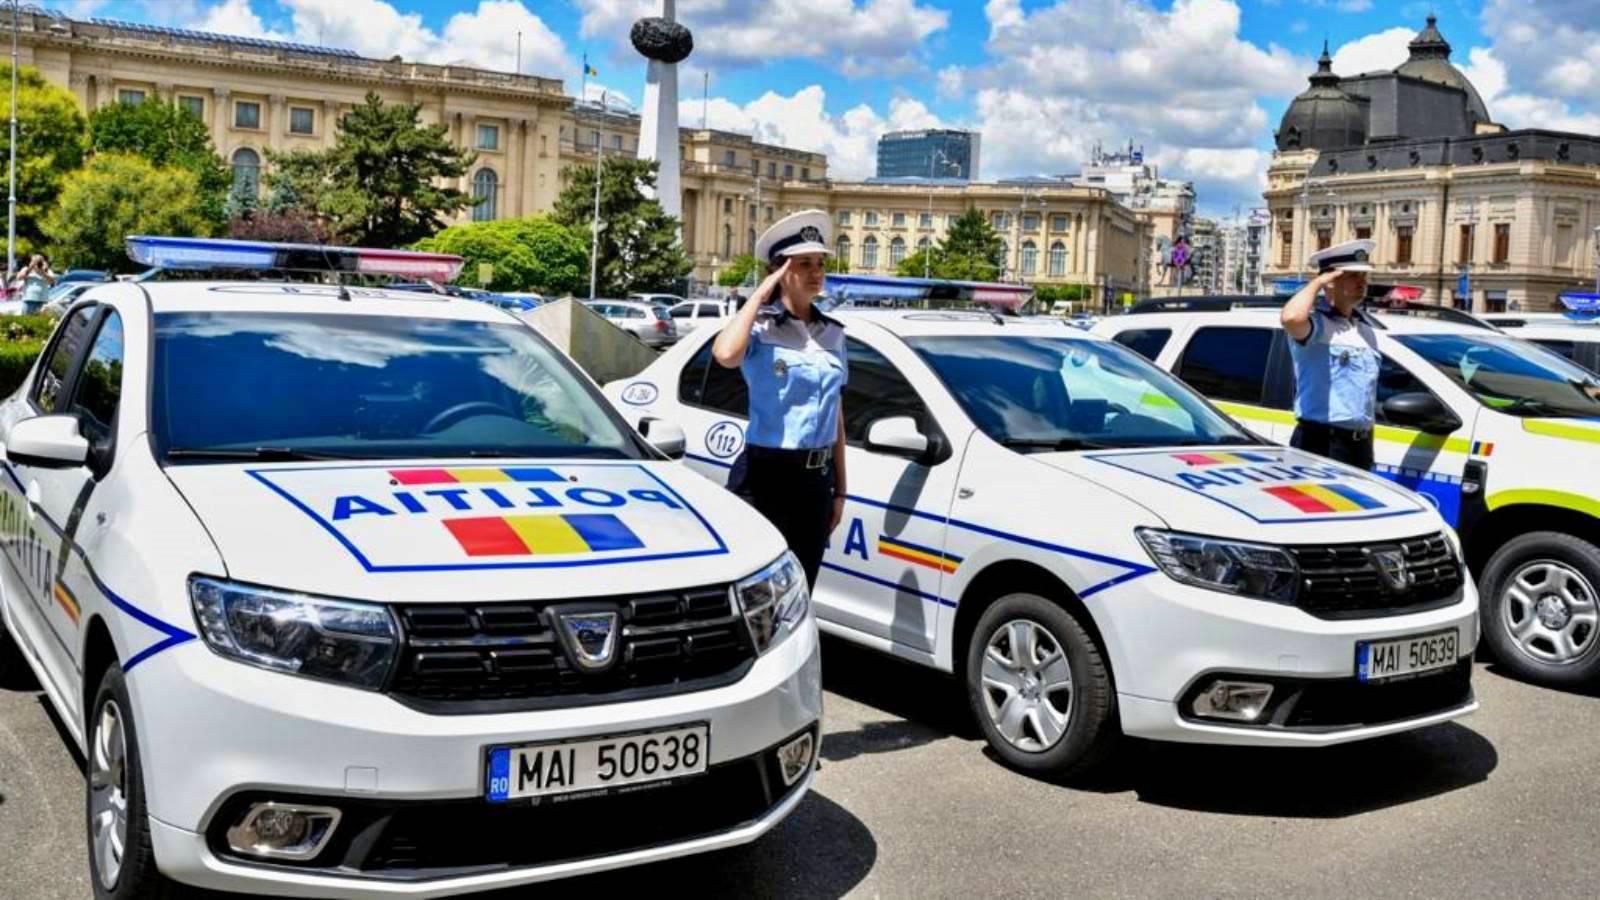 De Roemeense politie begint mobiel wegonderwijs te geven in Roemenië